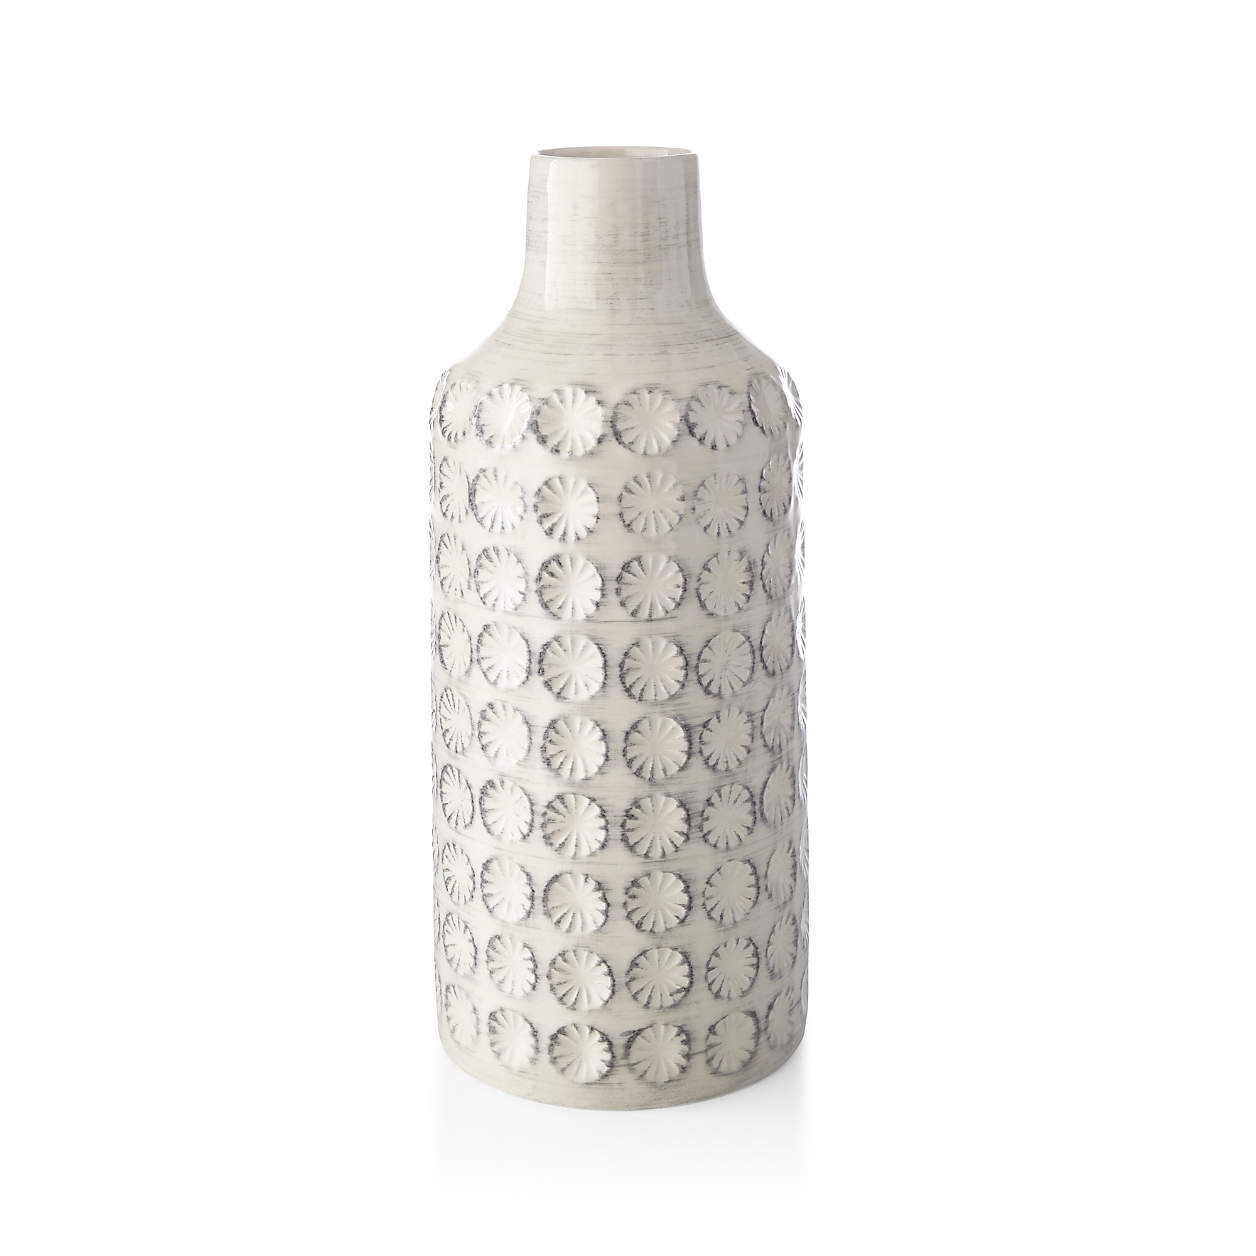 Taline White Glazed Stoneware Vase - Image 0